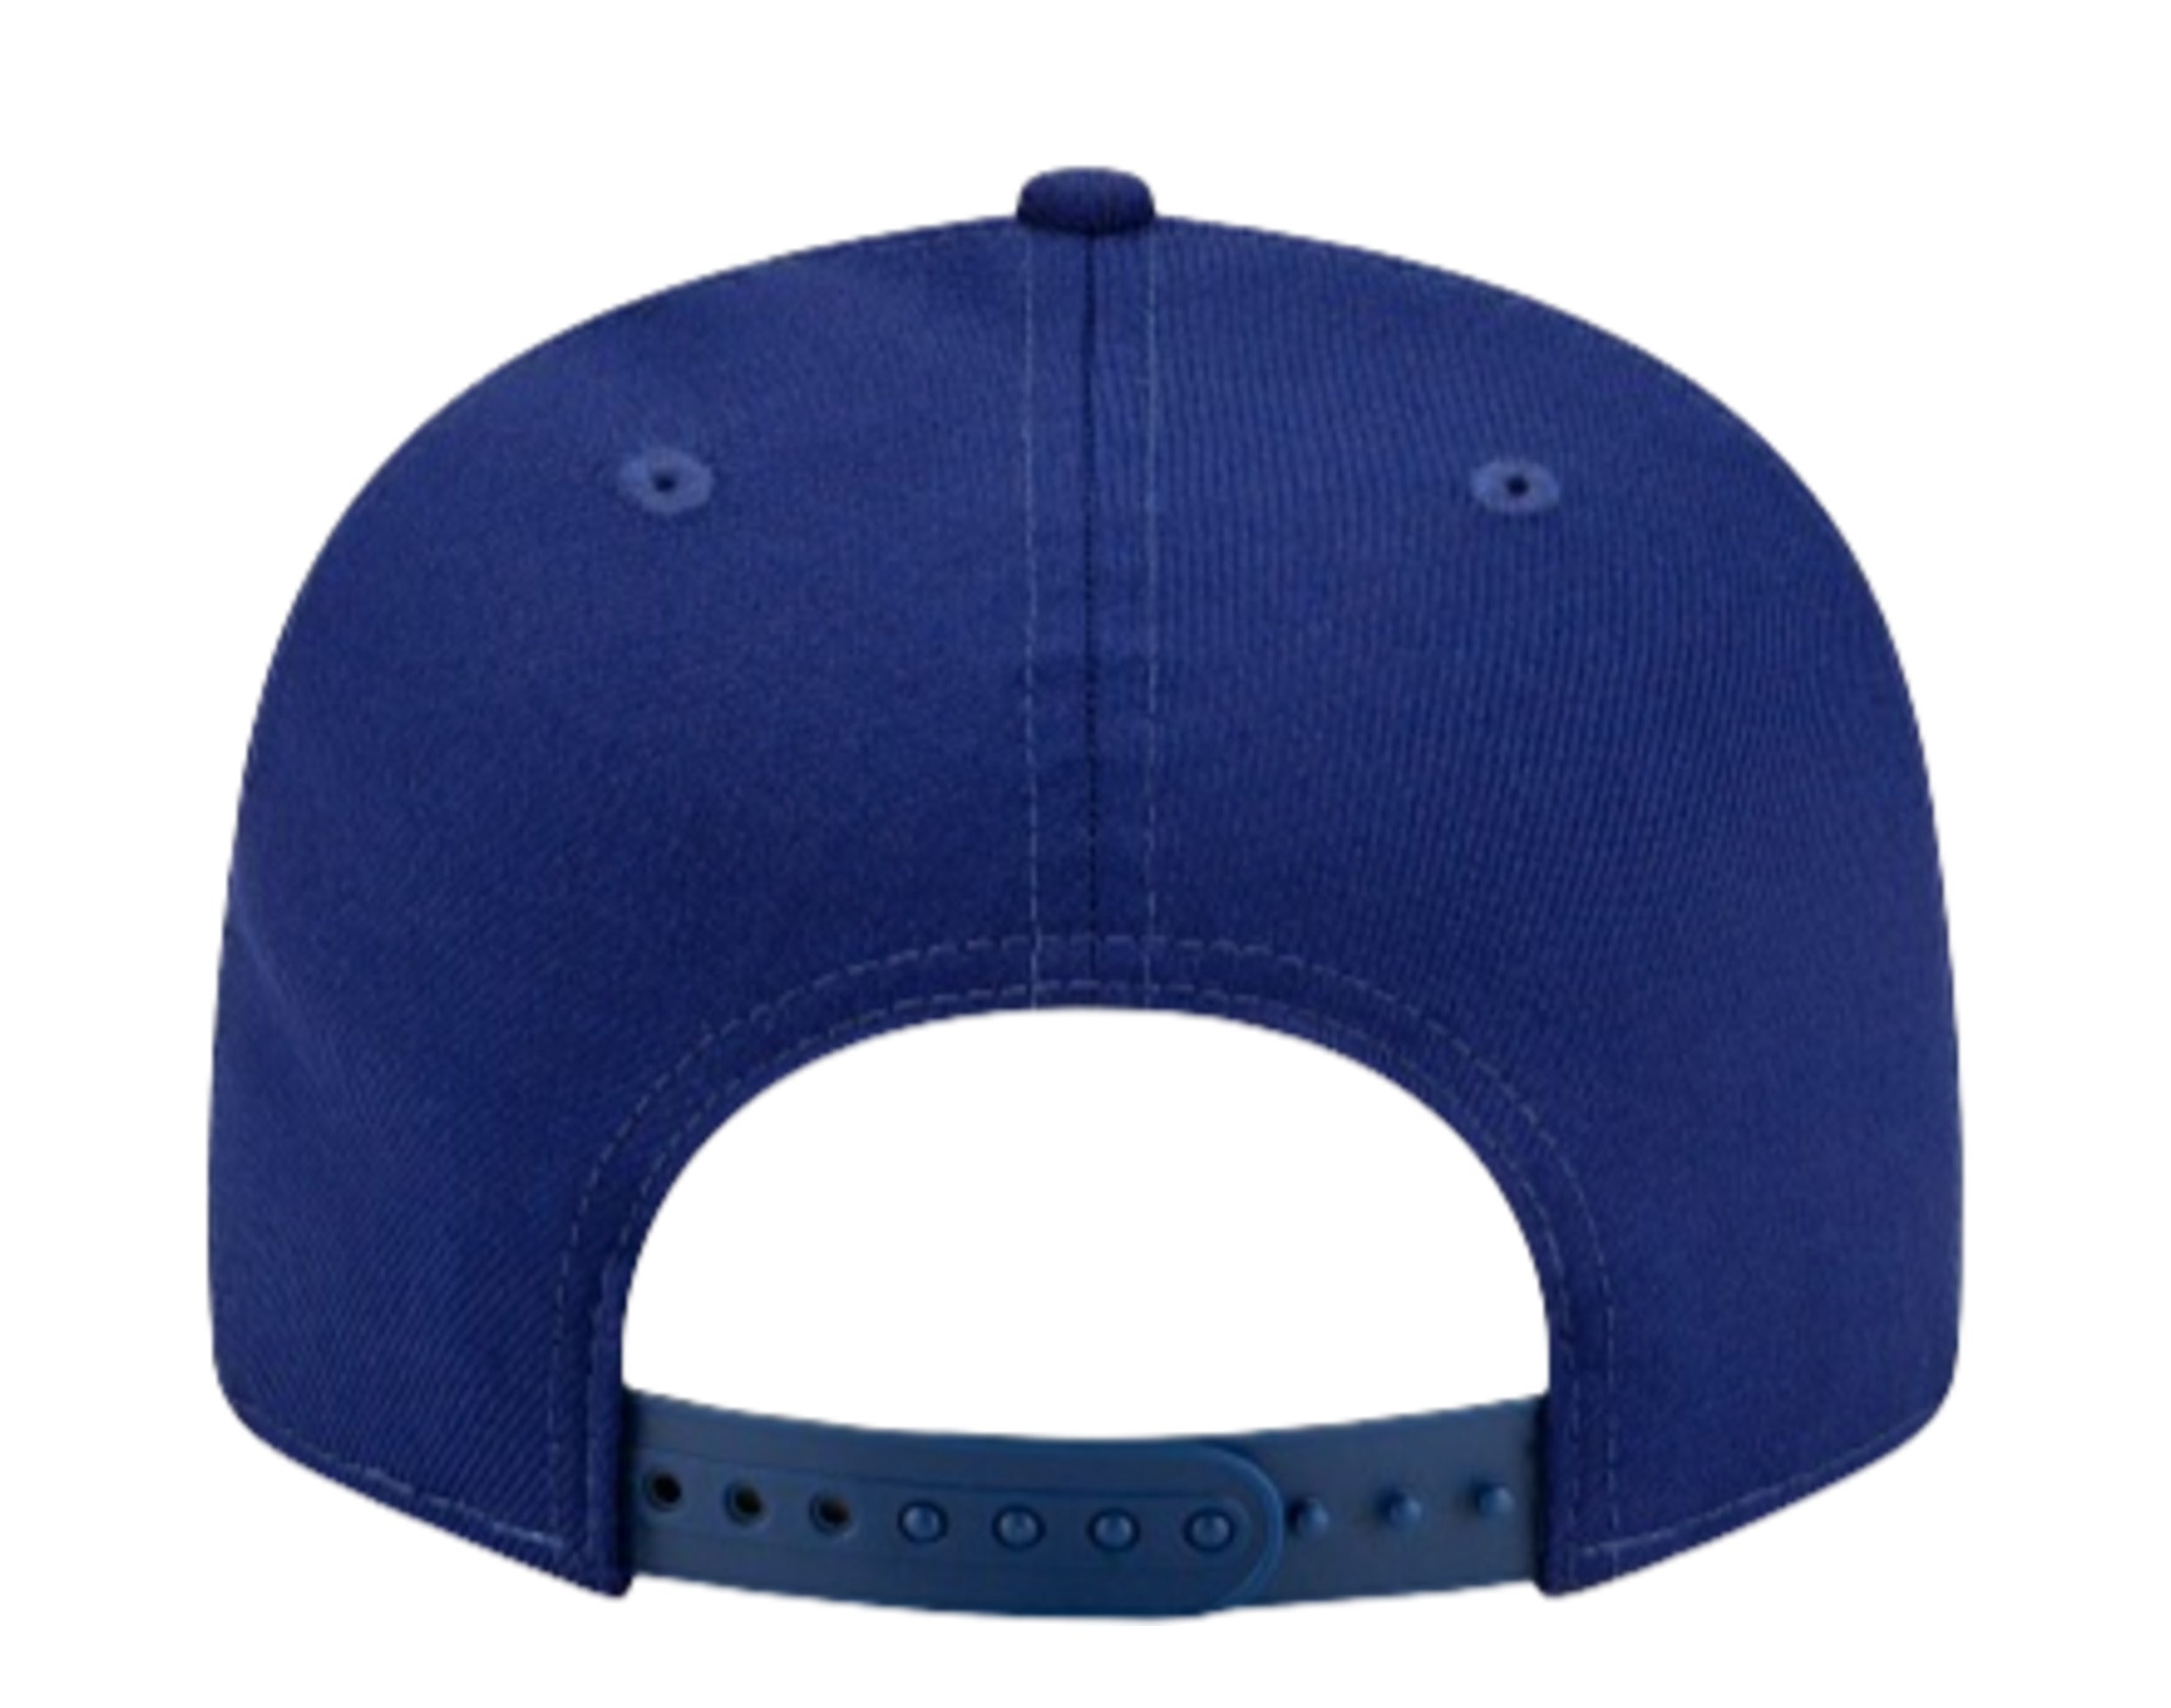 Upside Down Dallas Trucker Cap, Inverted Dallas Embroidered Hat 